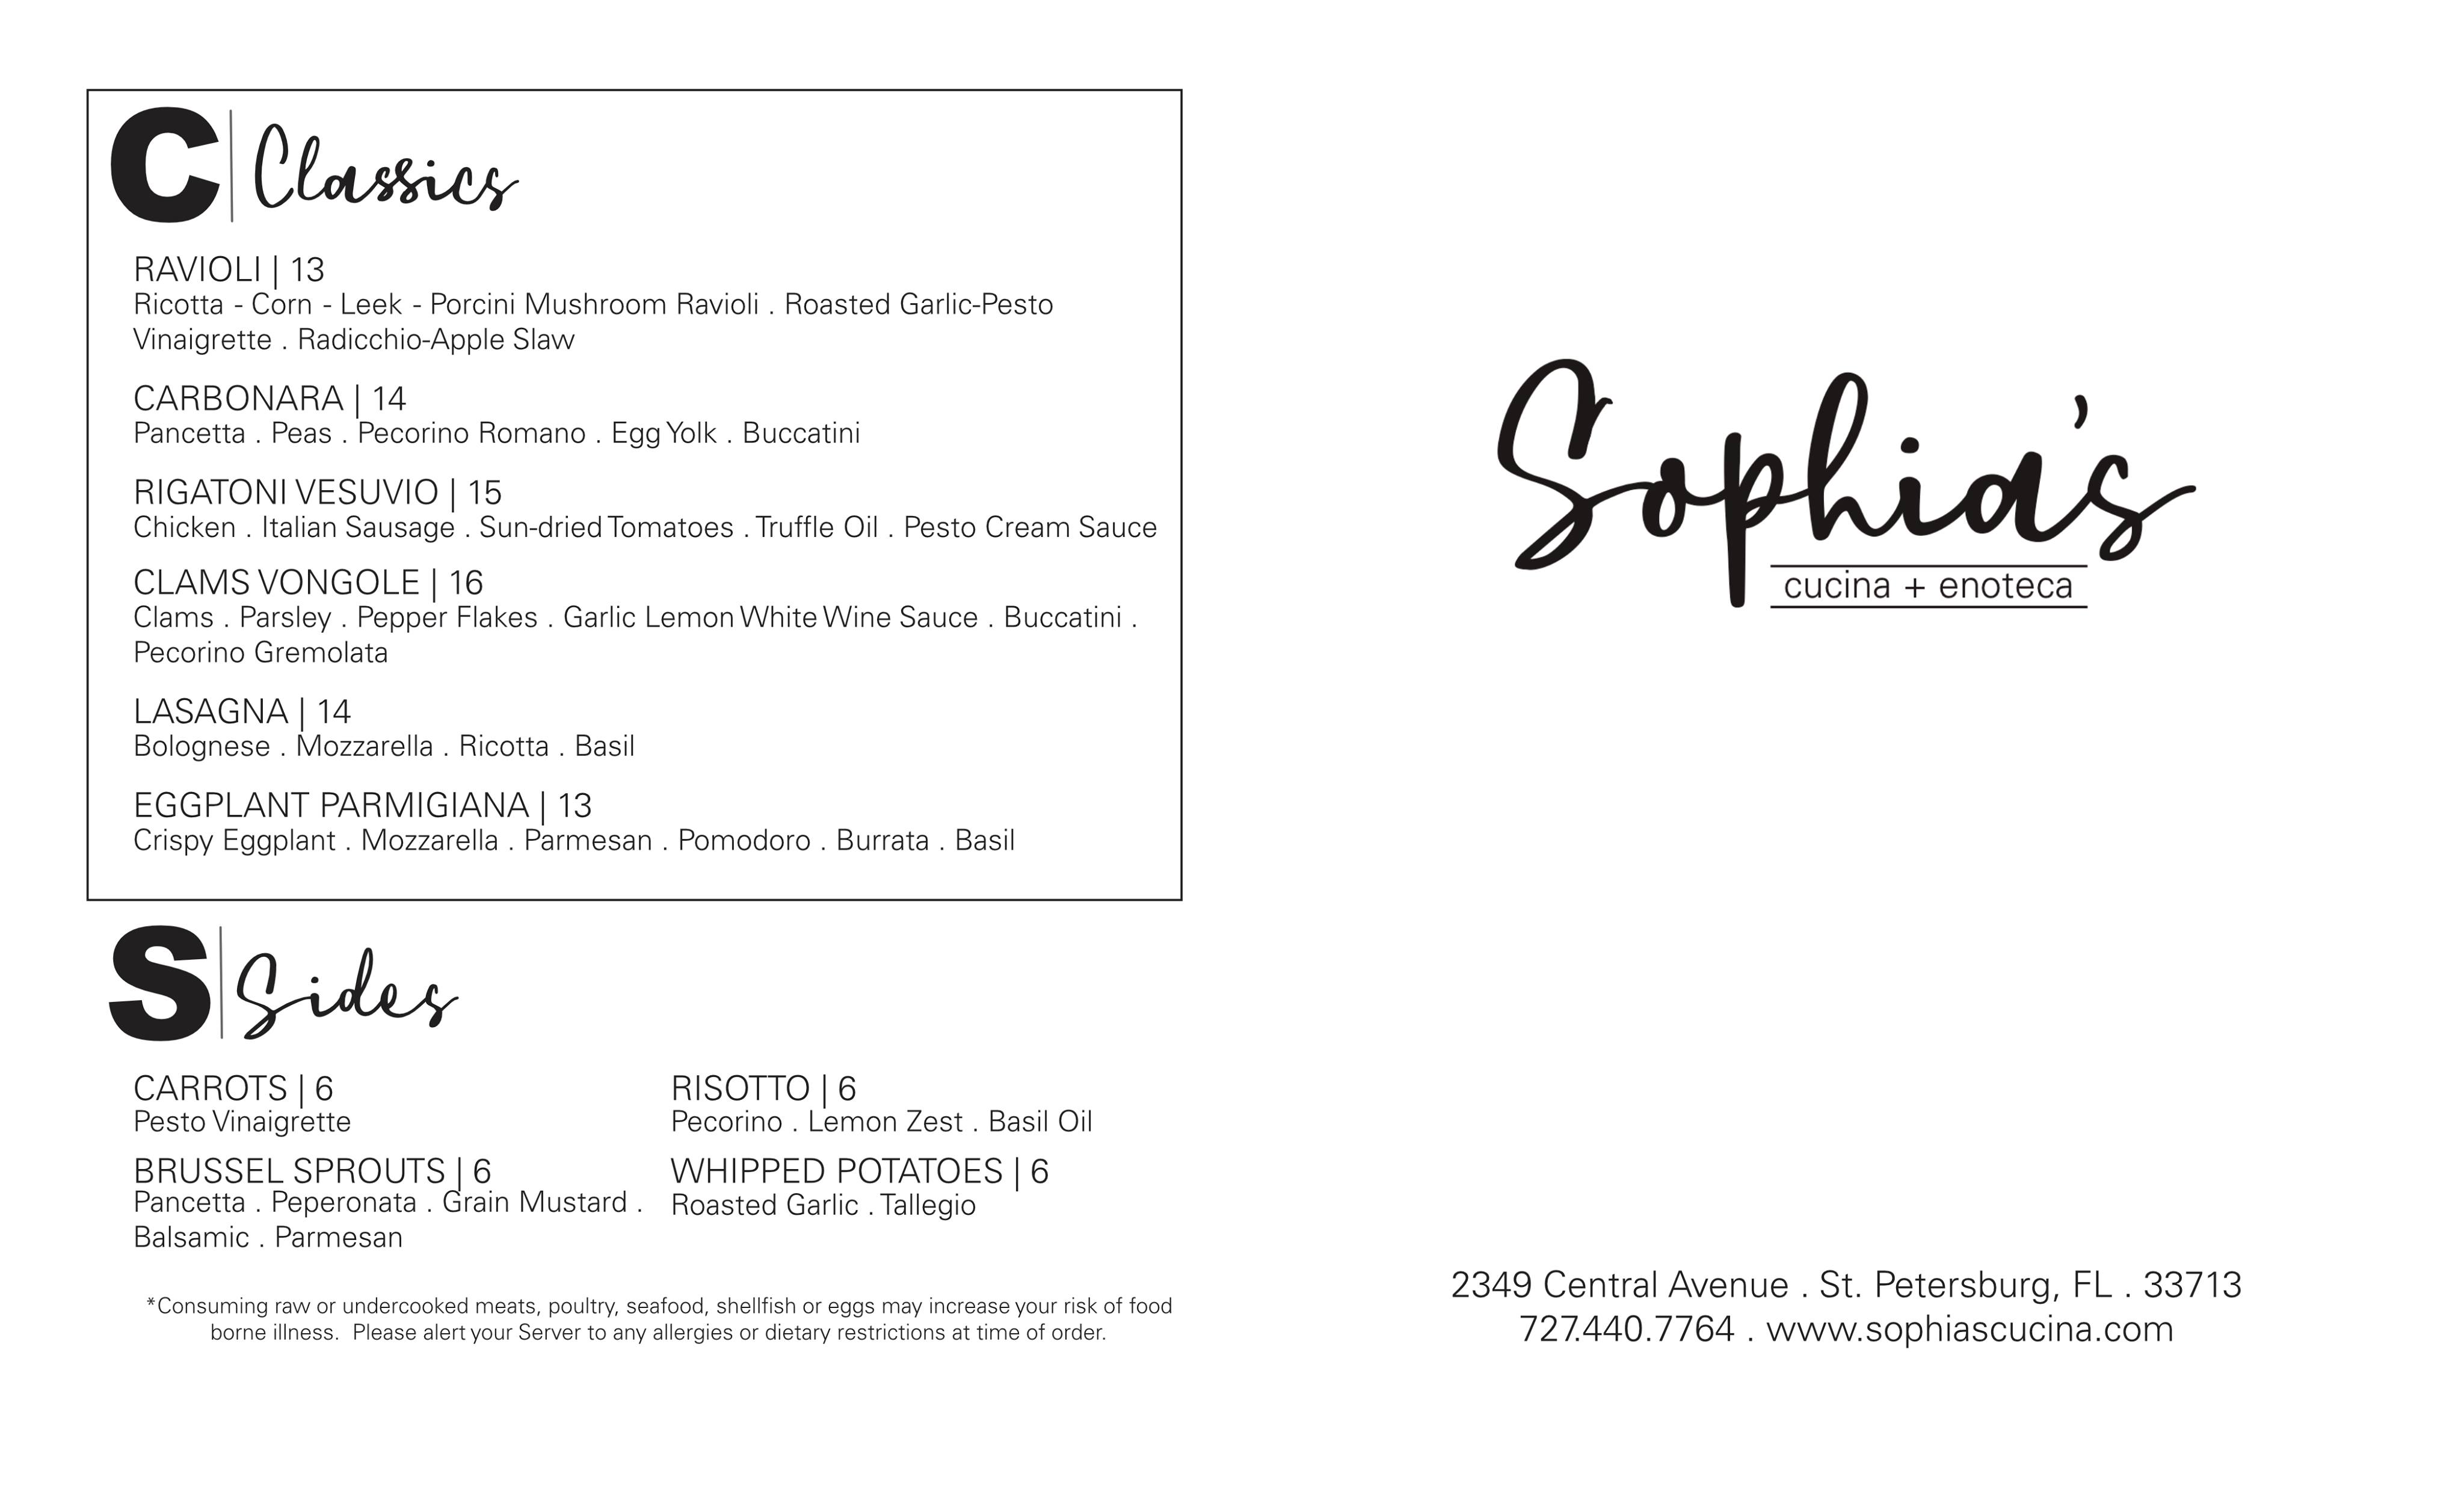 Sophia's menu